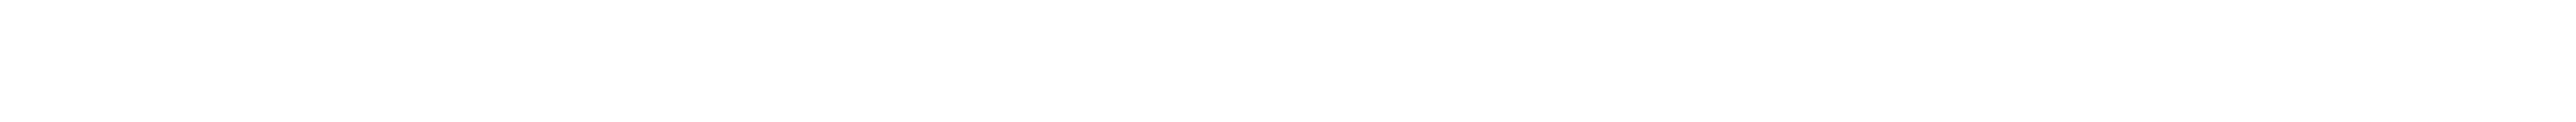 essexs-home-logo